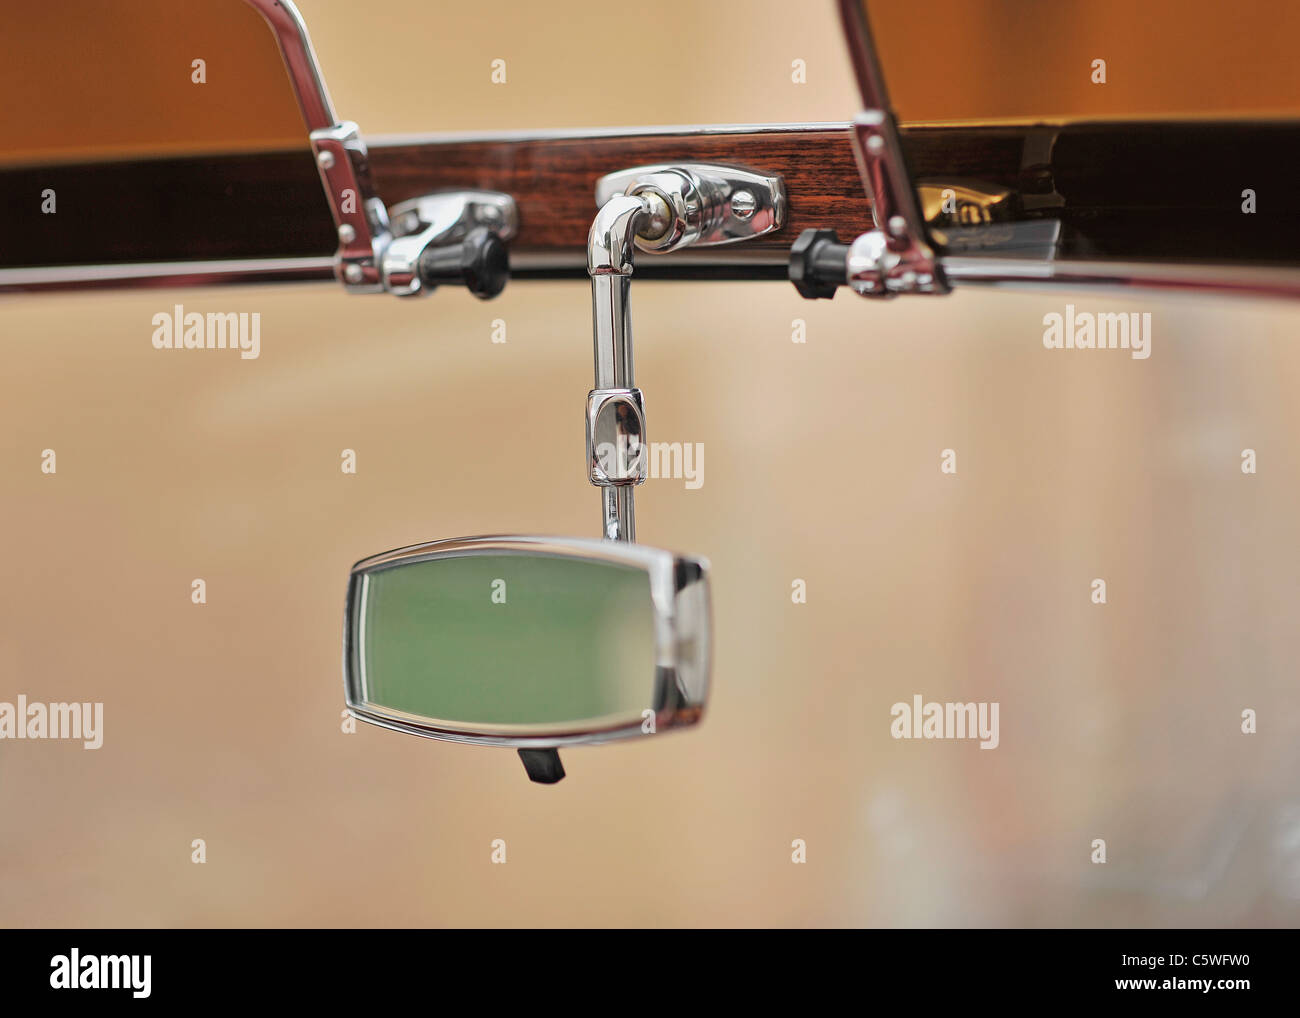 Würfel hängen an den Rückspiegel eines Autos Stockfotografie - Alamy